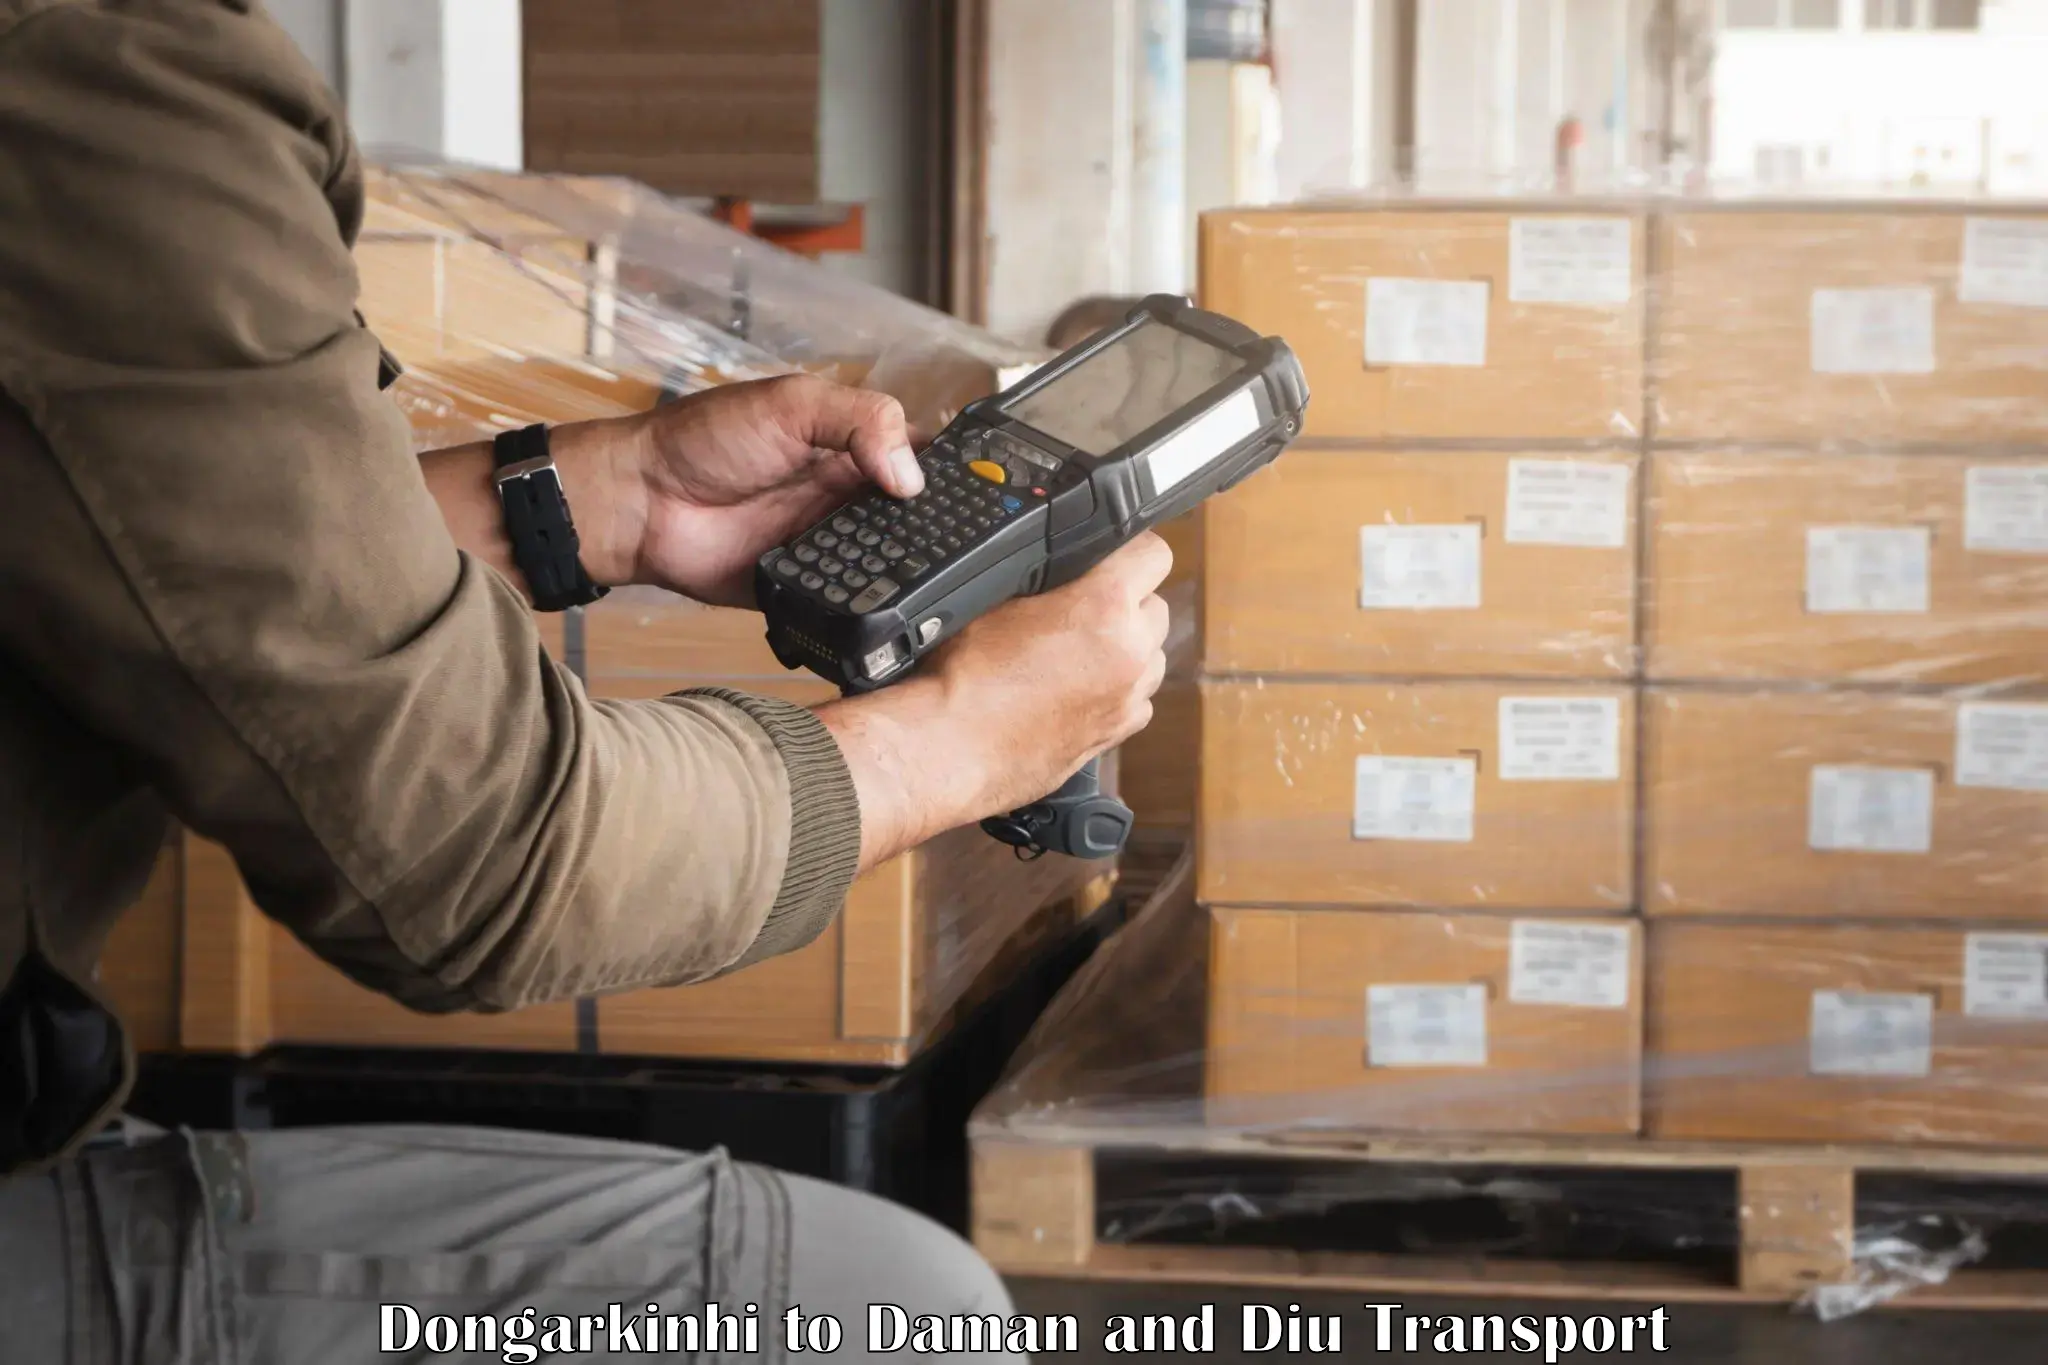 Cargo transportation services Dongarkinhi to Diu